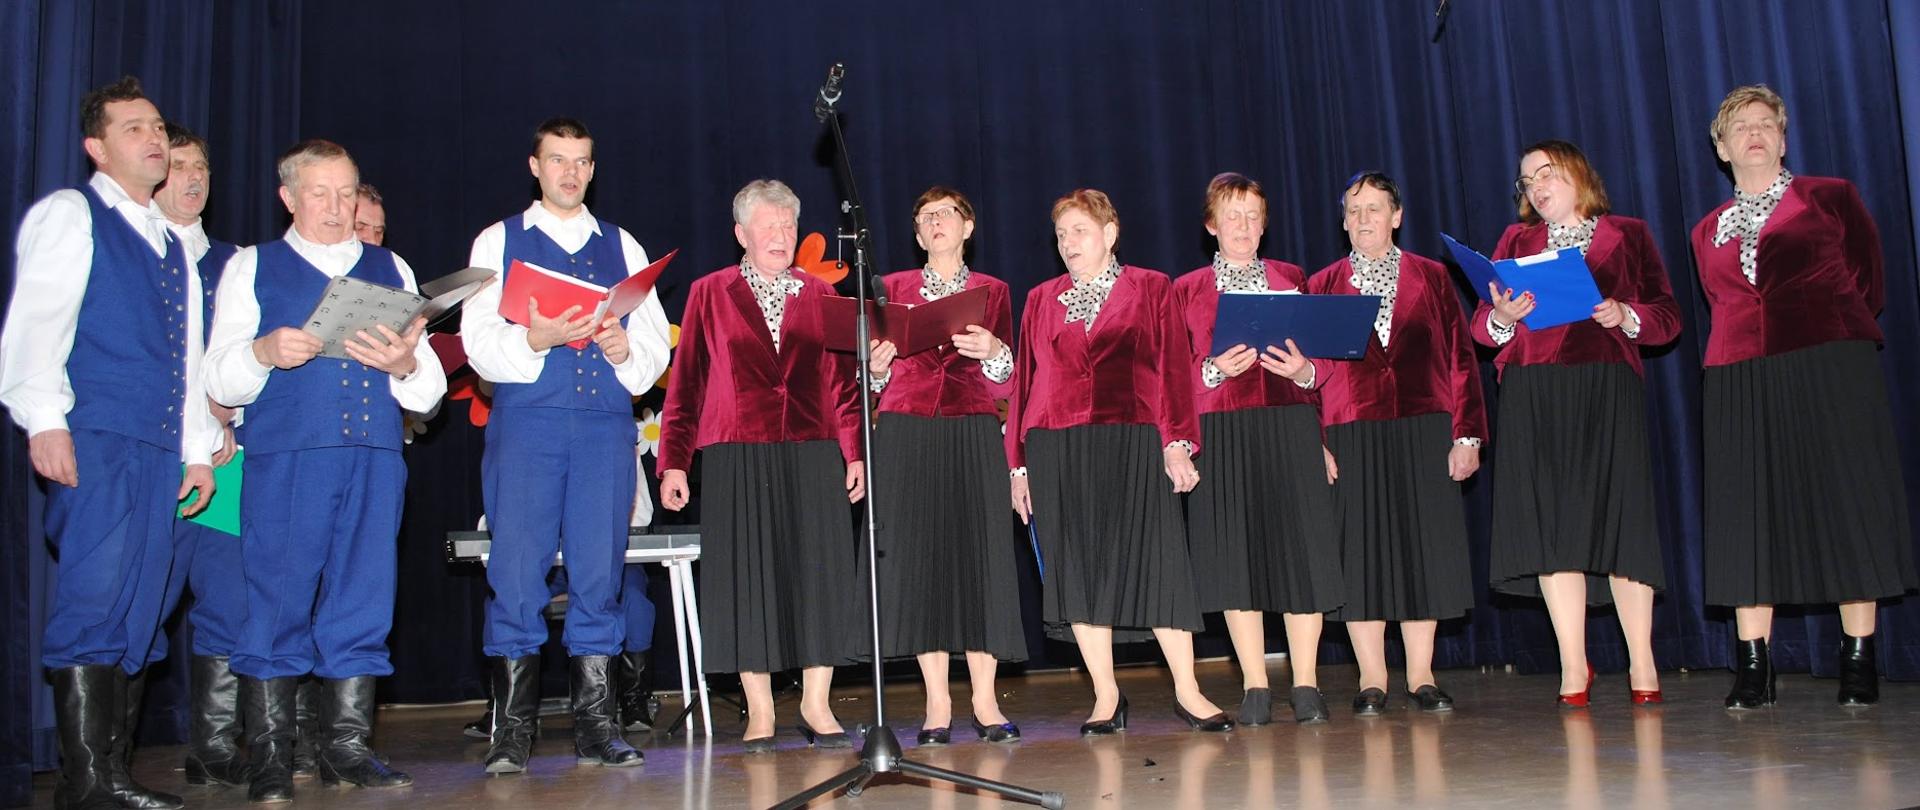 siedem kobiet ubranych w różowe żakiety i czarne spódnice i kilku mężczyzn w niebieskich strojach występują na scenie 